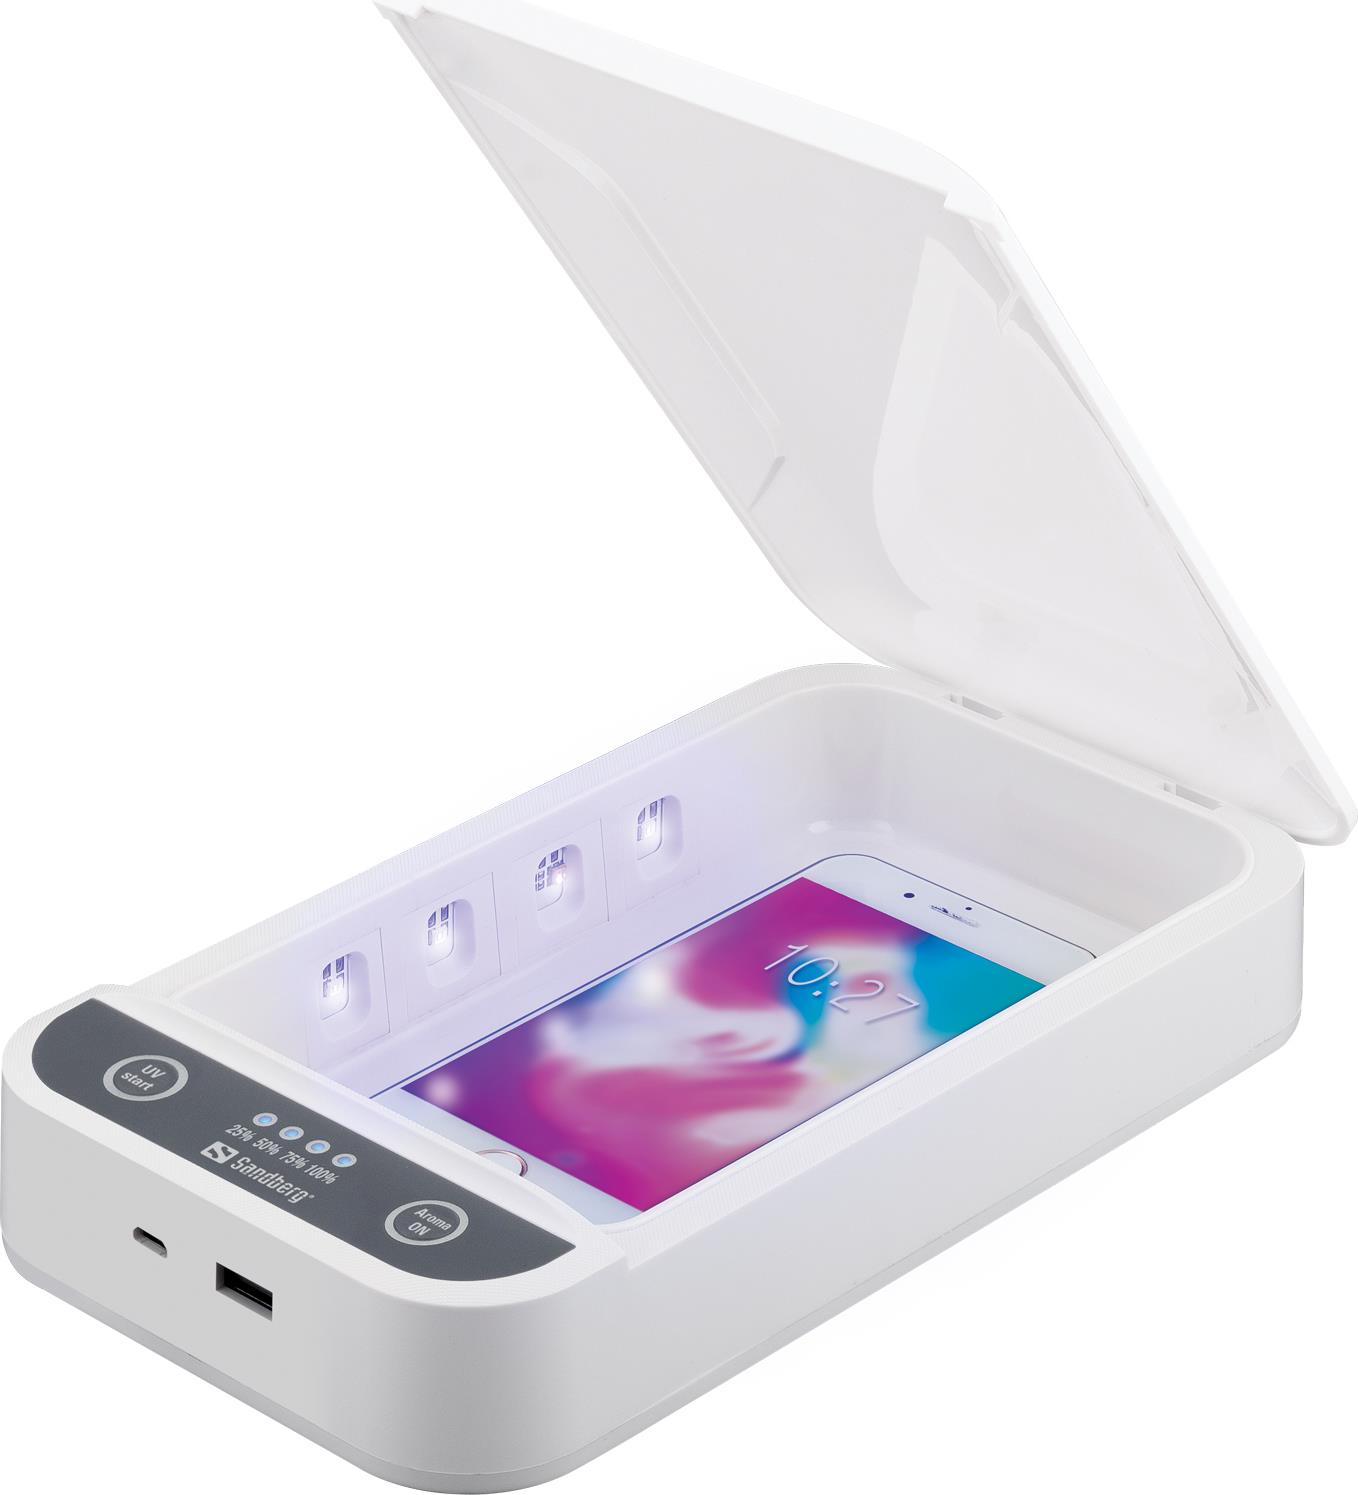 Sandberg UV Sterilizer Box 17,80cm (7") USB. Produktfarbe: Weiß, Ultraviolette (UV) Wellenlänge: 280 nm. Energiequelle: USB. Breite: 277 mm, Tiefe: 125 mm, Höhe: 50 mm. USB Kabellänge: 0,8 m (470-30)